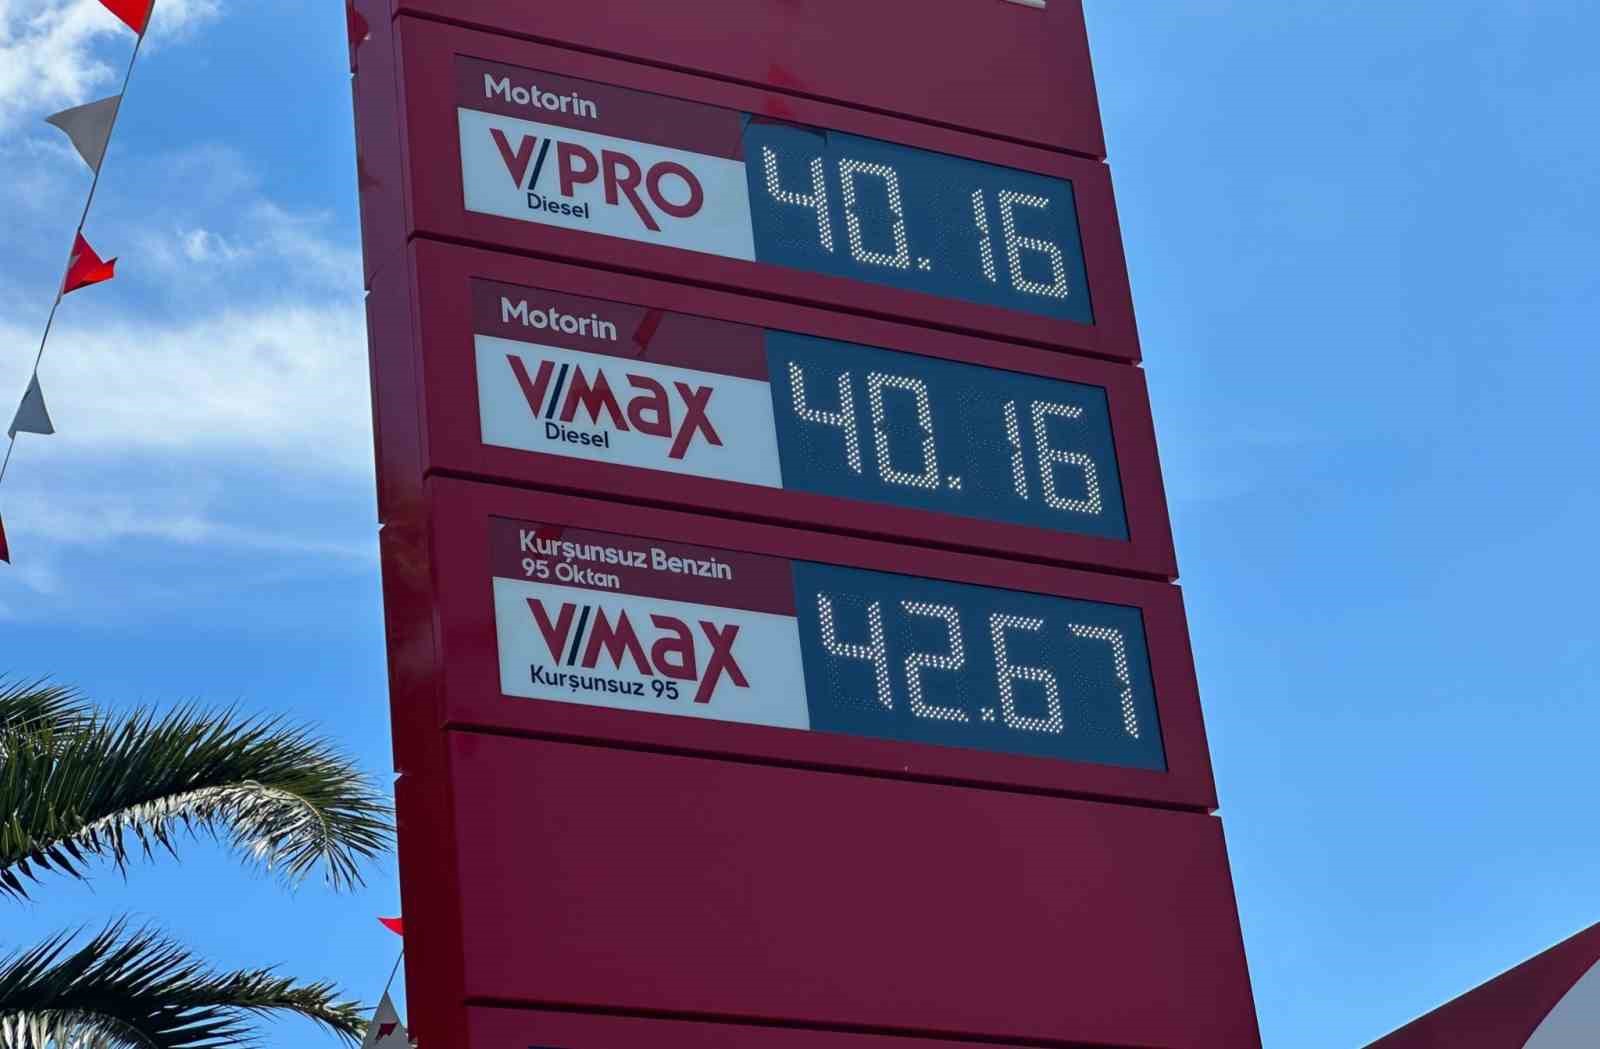 benzin istasyonlarinda fiyat tabelalari degisti 1 9asHmapL